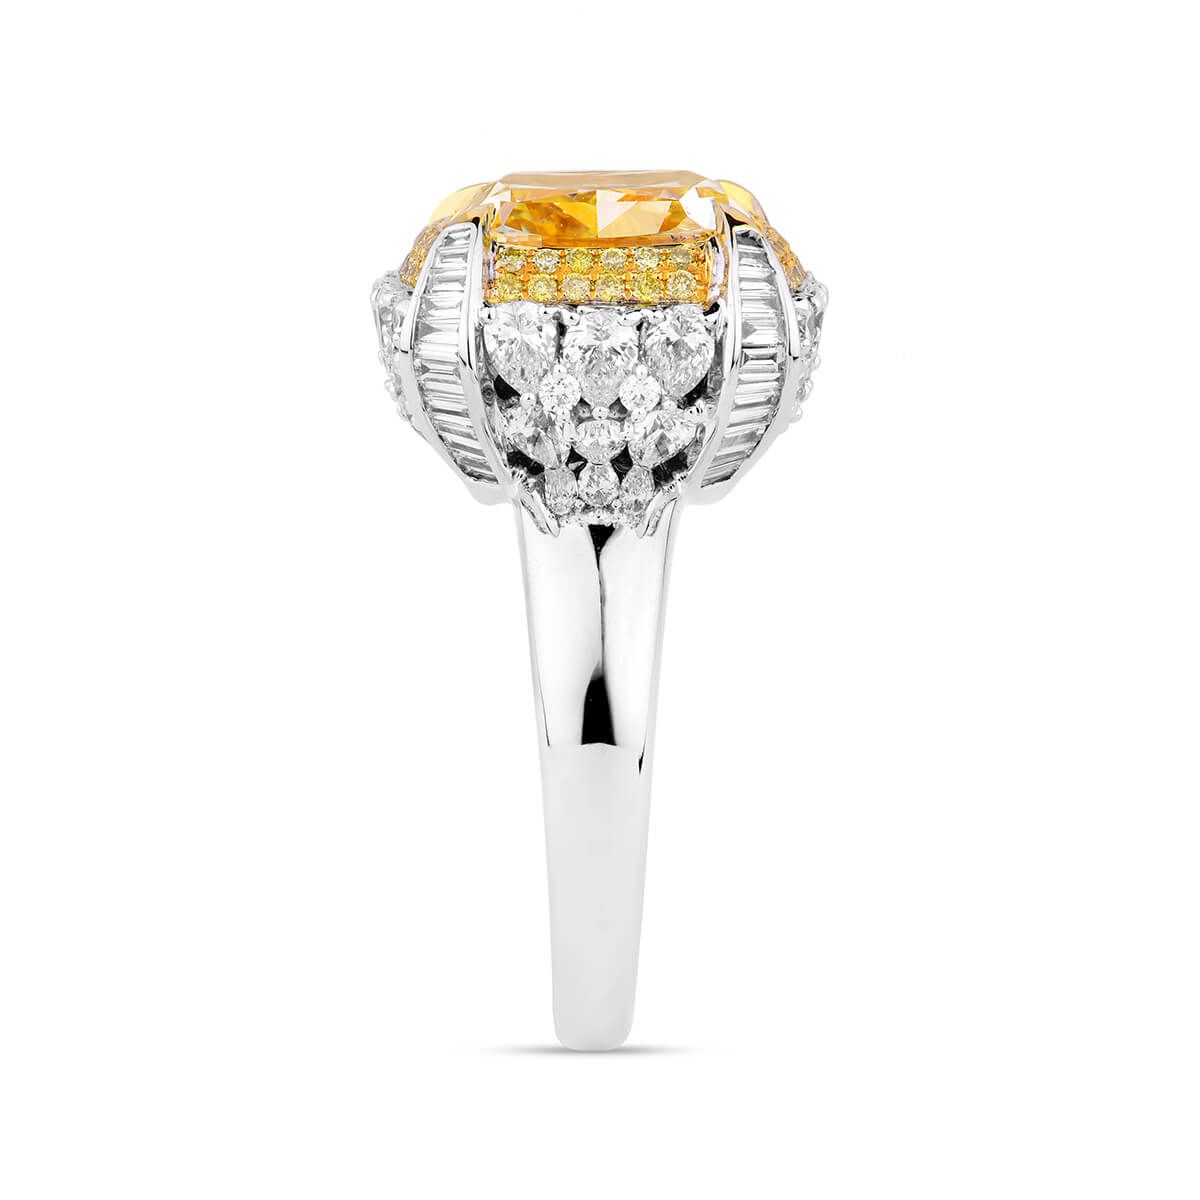 Fancy Yellow Diamond Ring, 8.63 Ct. TW, Cushion shape, GIA Certified, 5181908676